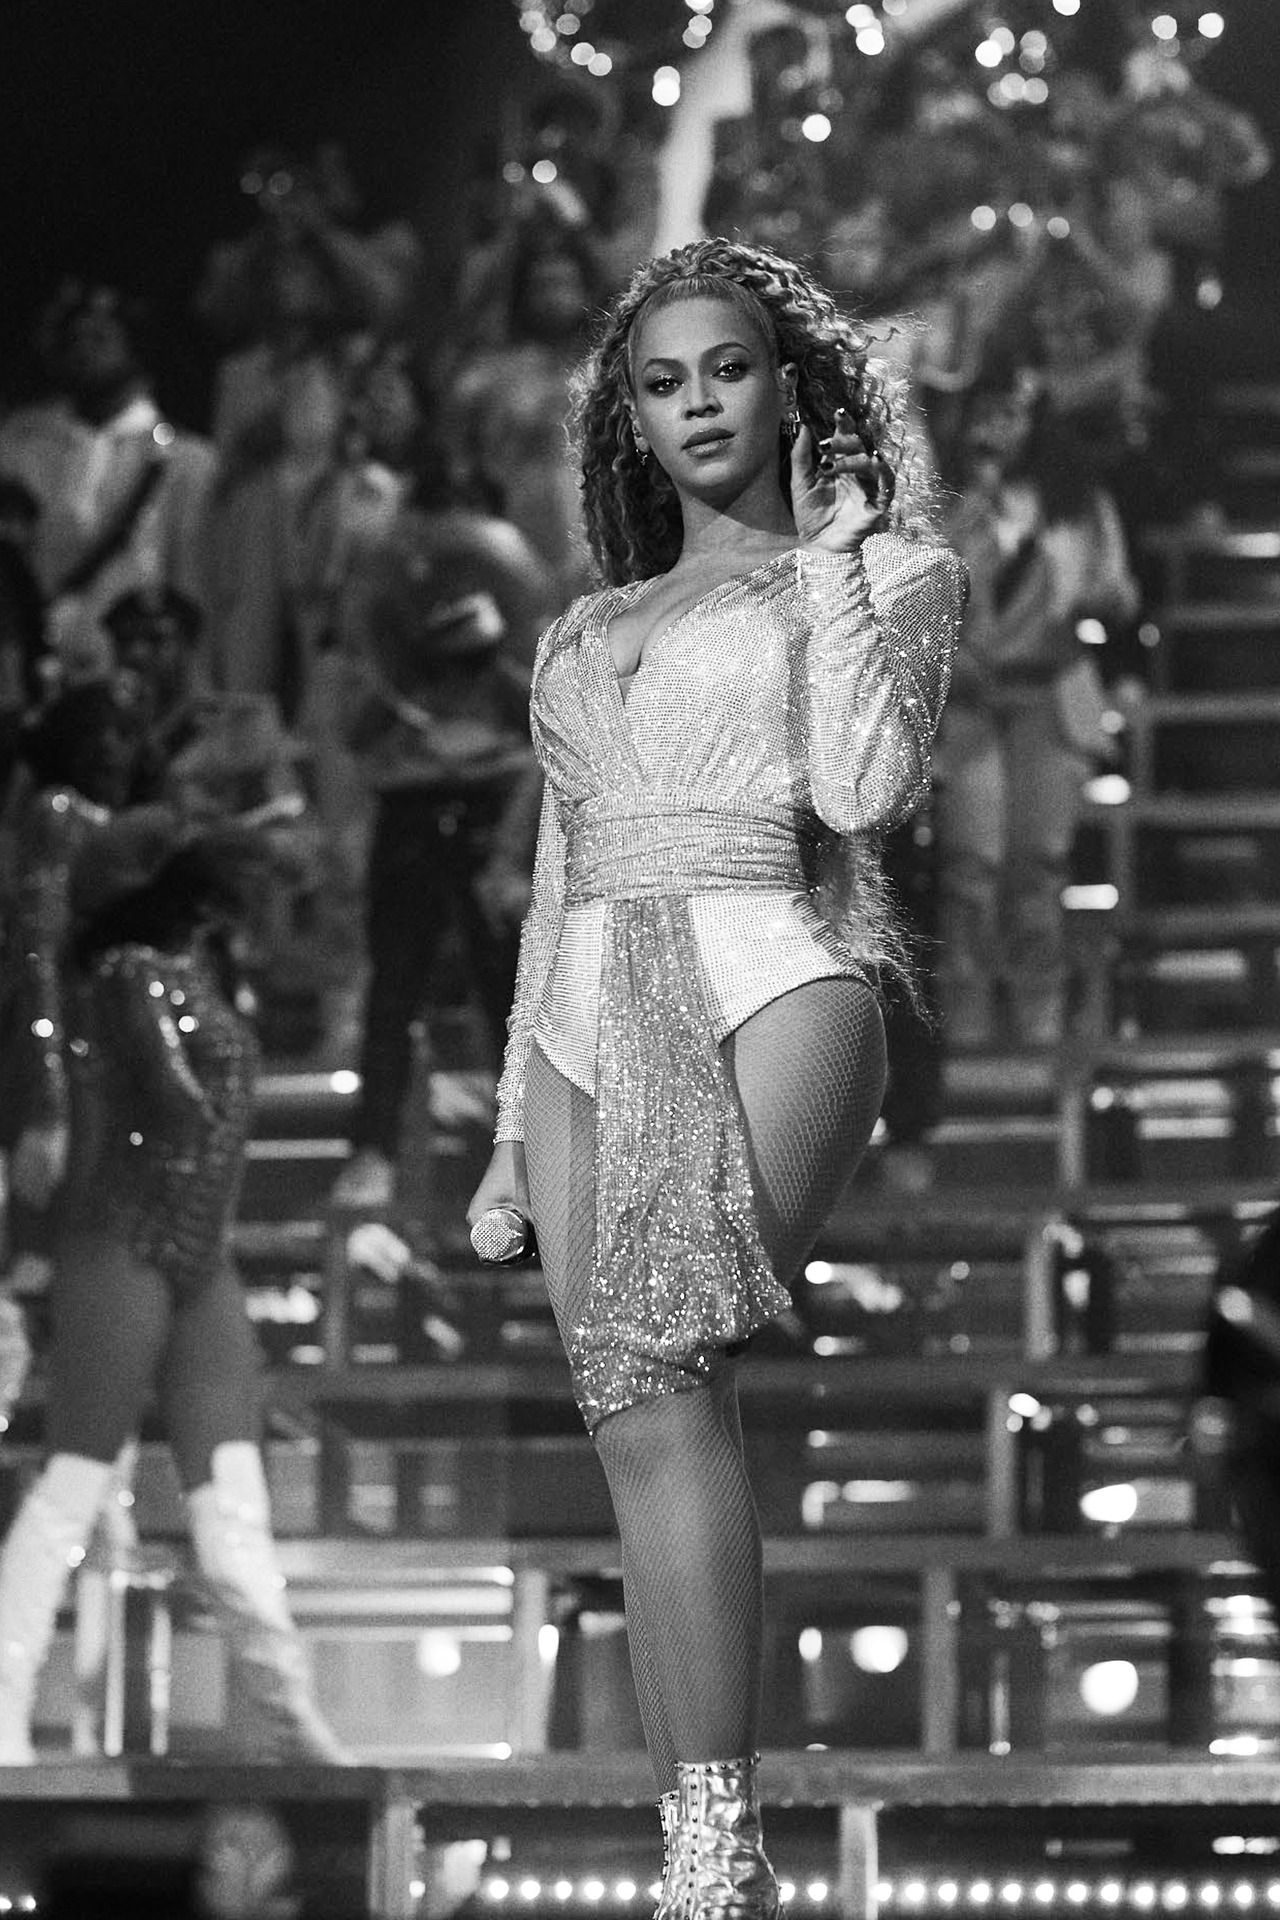 Beyoncé Homecoming on Netflix 17th April 2019. Beyonce coachella